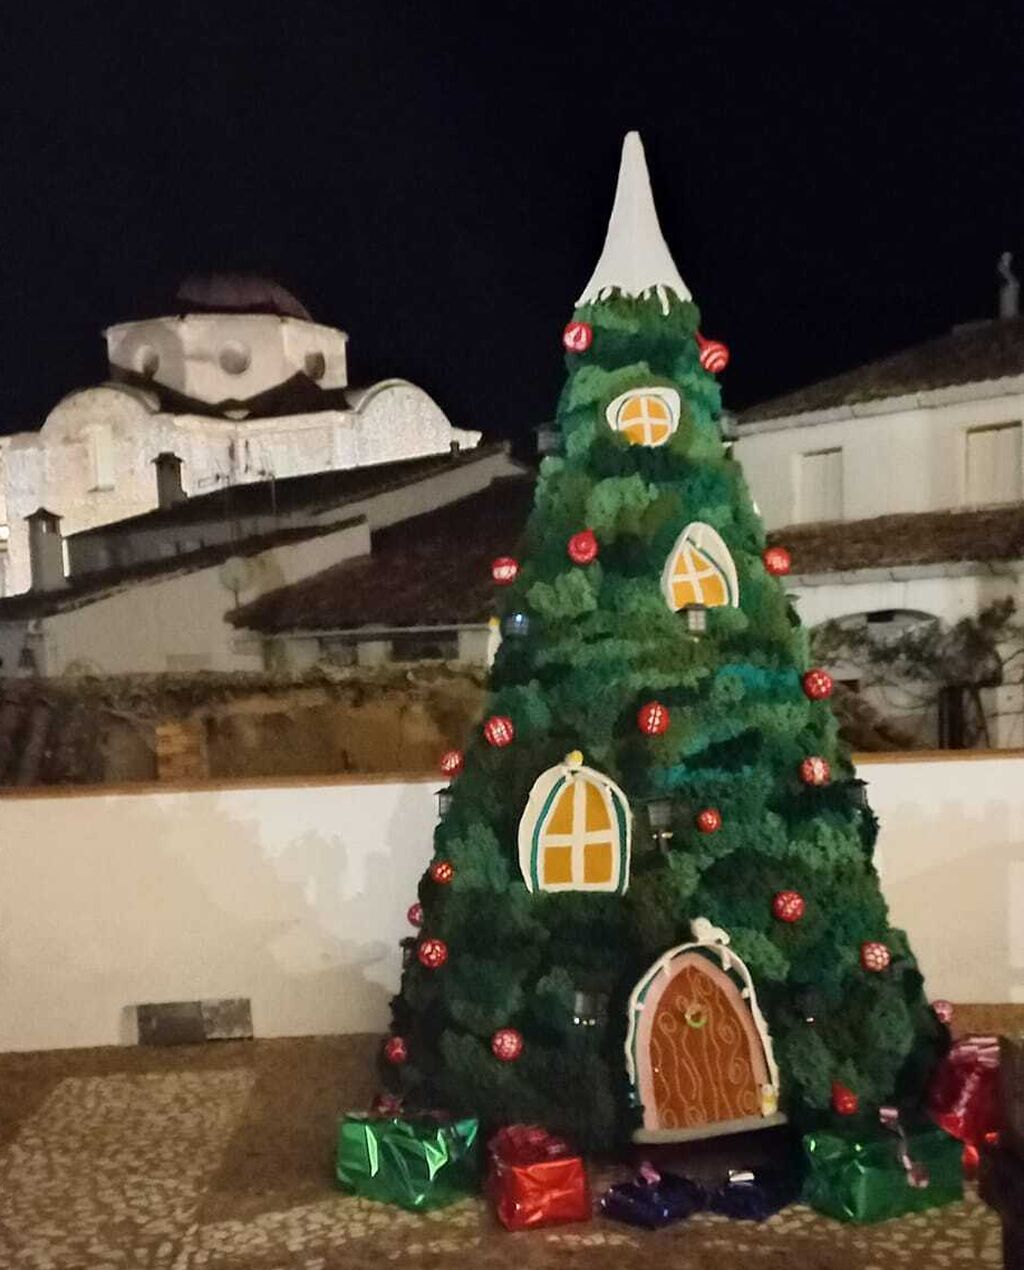 As&iacute; de bonito est&aacute; este pueblo serrano de Huelva vestido de ganchillo por Navidad